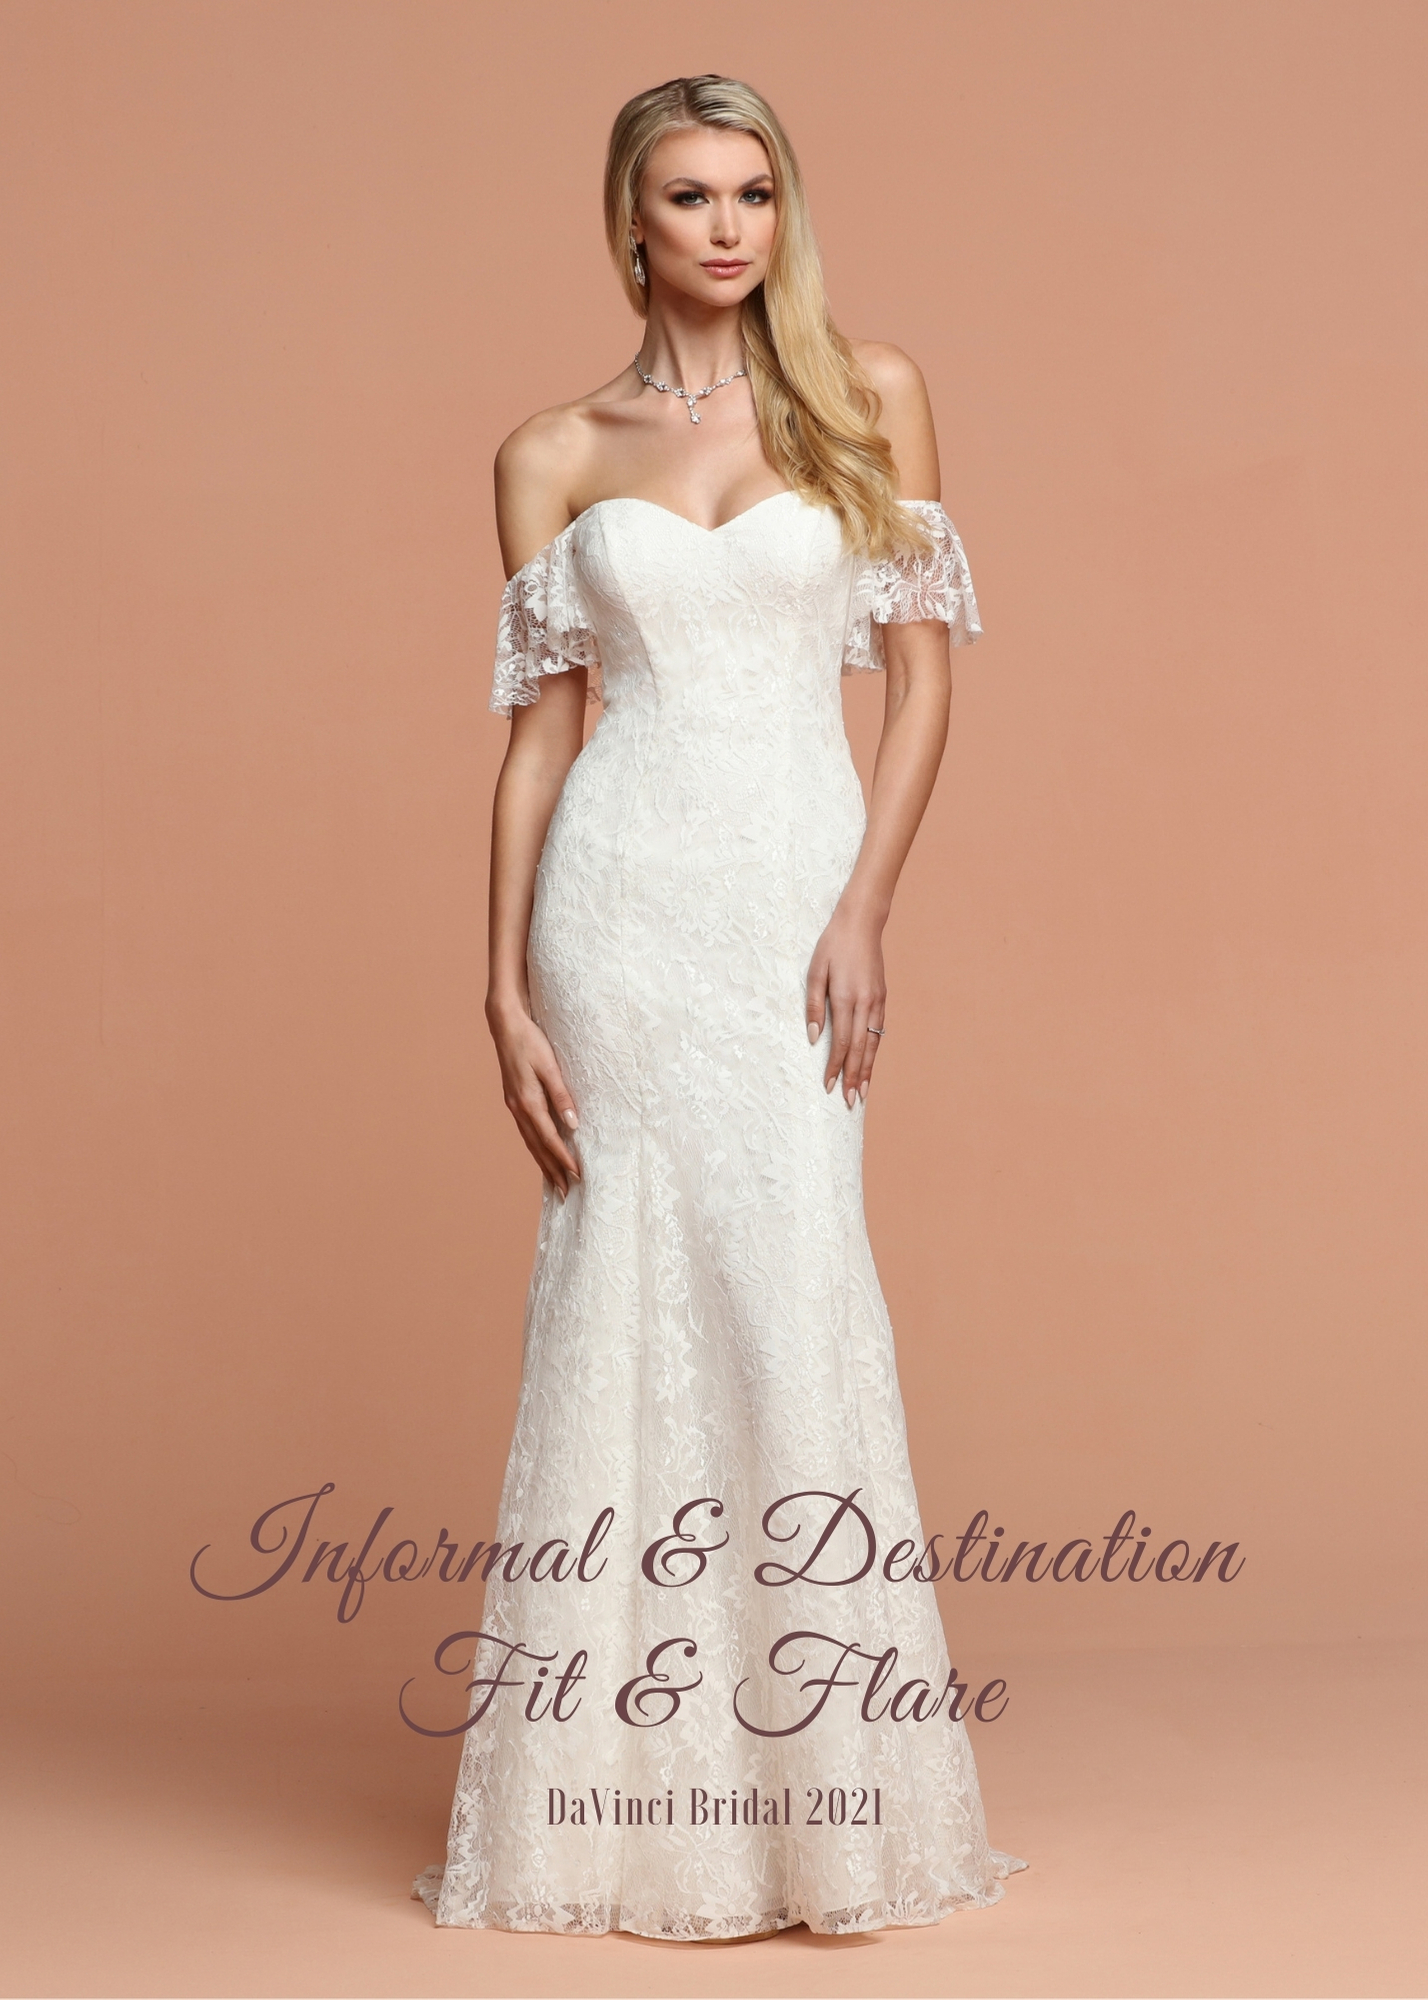 Informal & Destination Fit & Flare Wedding Dresses for 2021